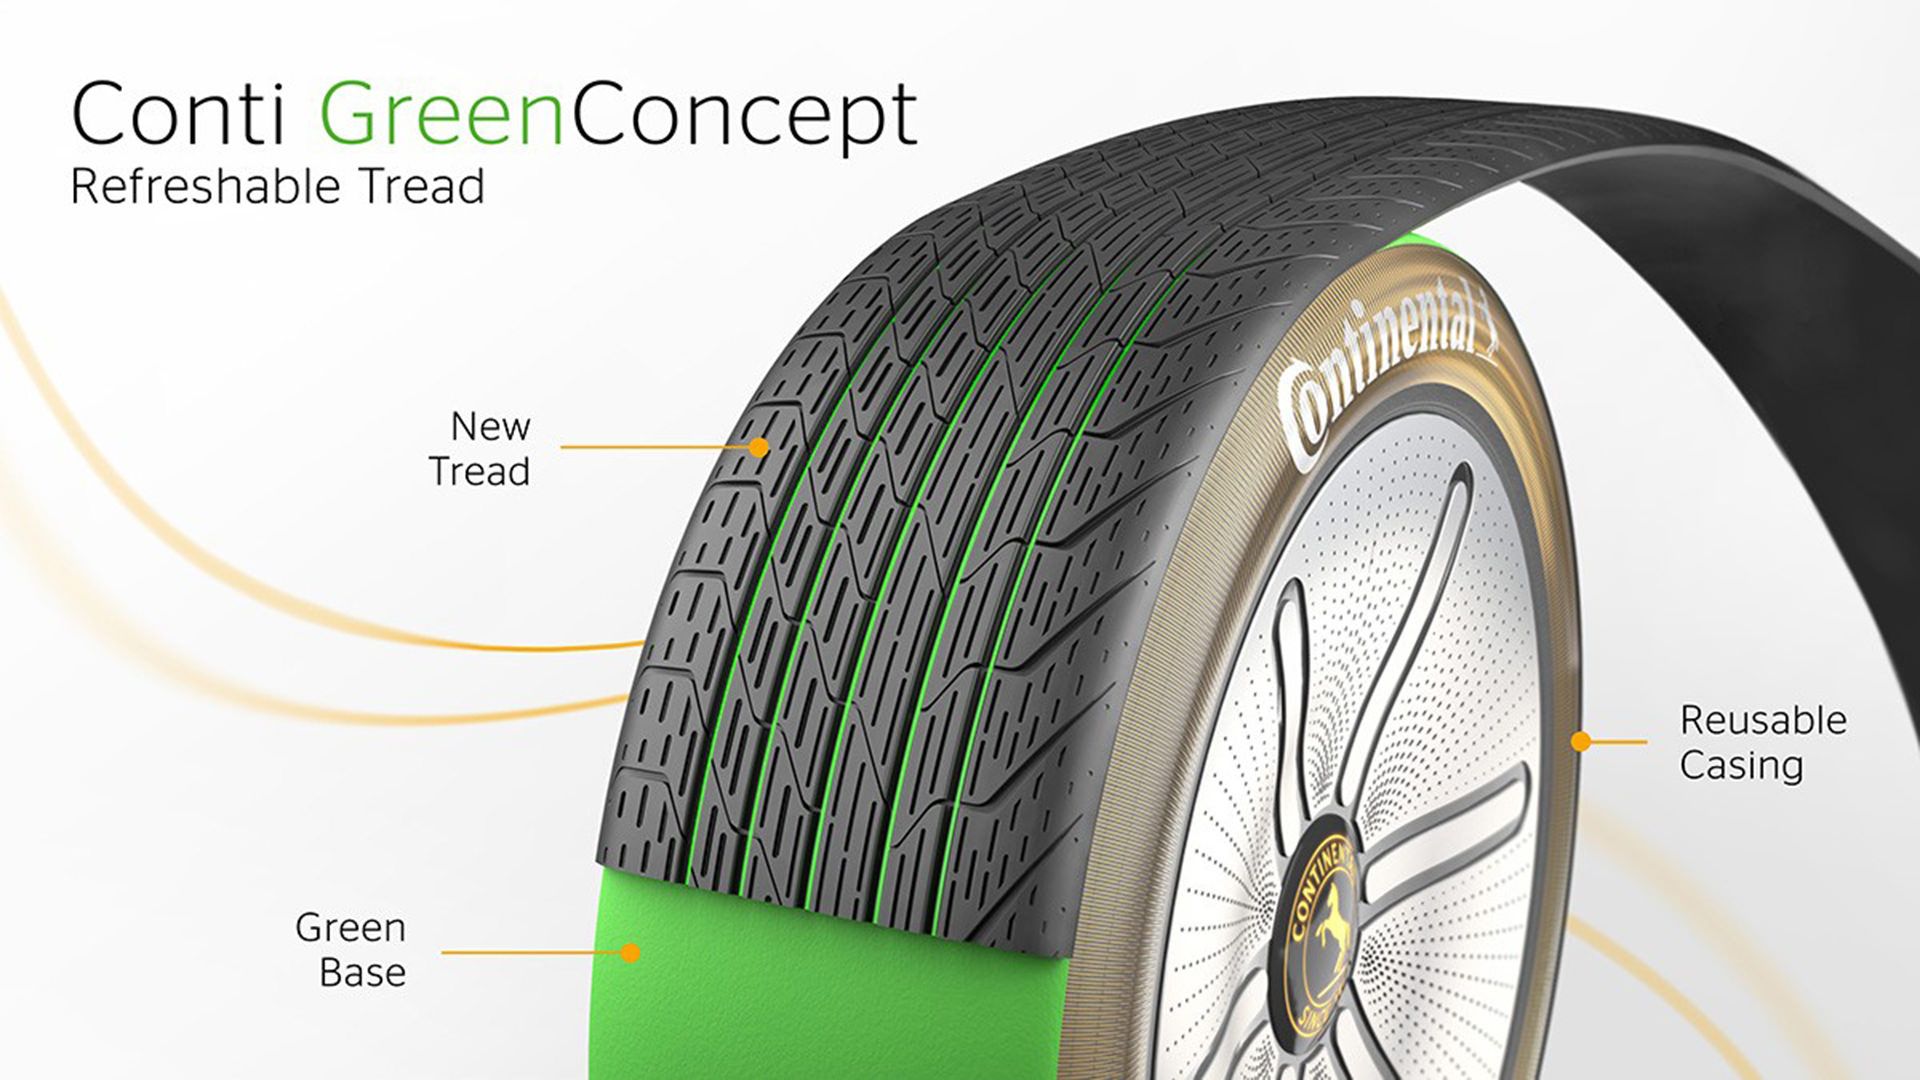 آج تایر مفهومی کنتیننتال / Continental GreenConcept tire